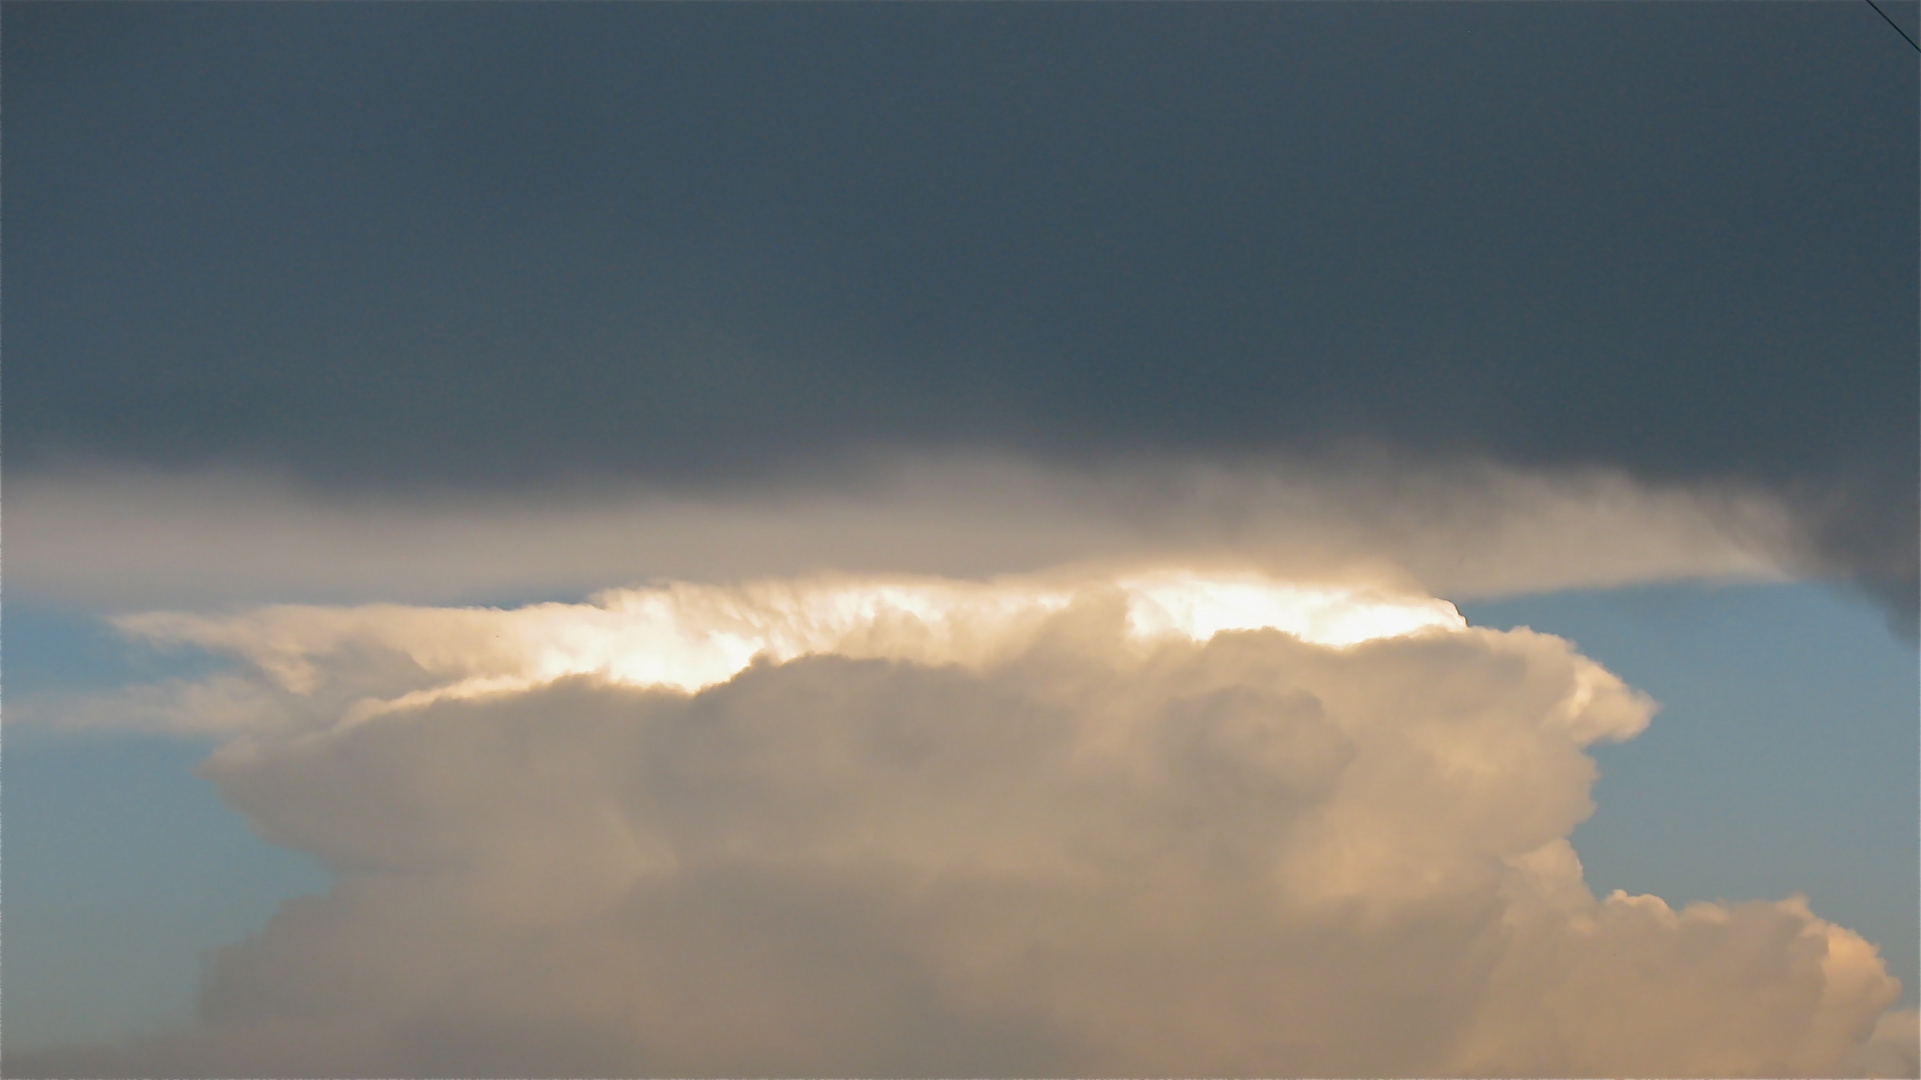 Abends um 8 Uhr ist aus der schönen Kumuluswolke eine Amboßwolke geworden.